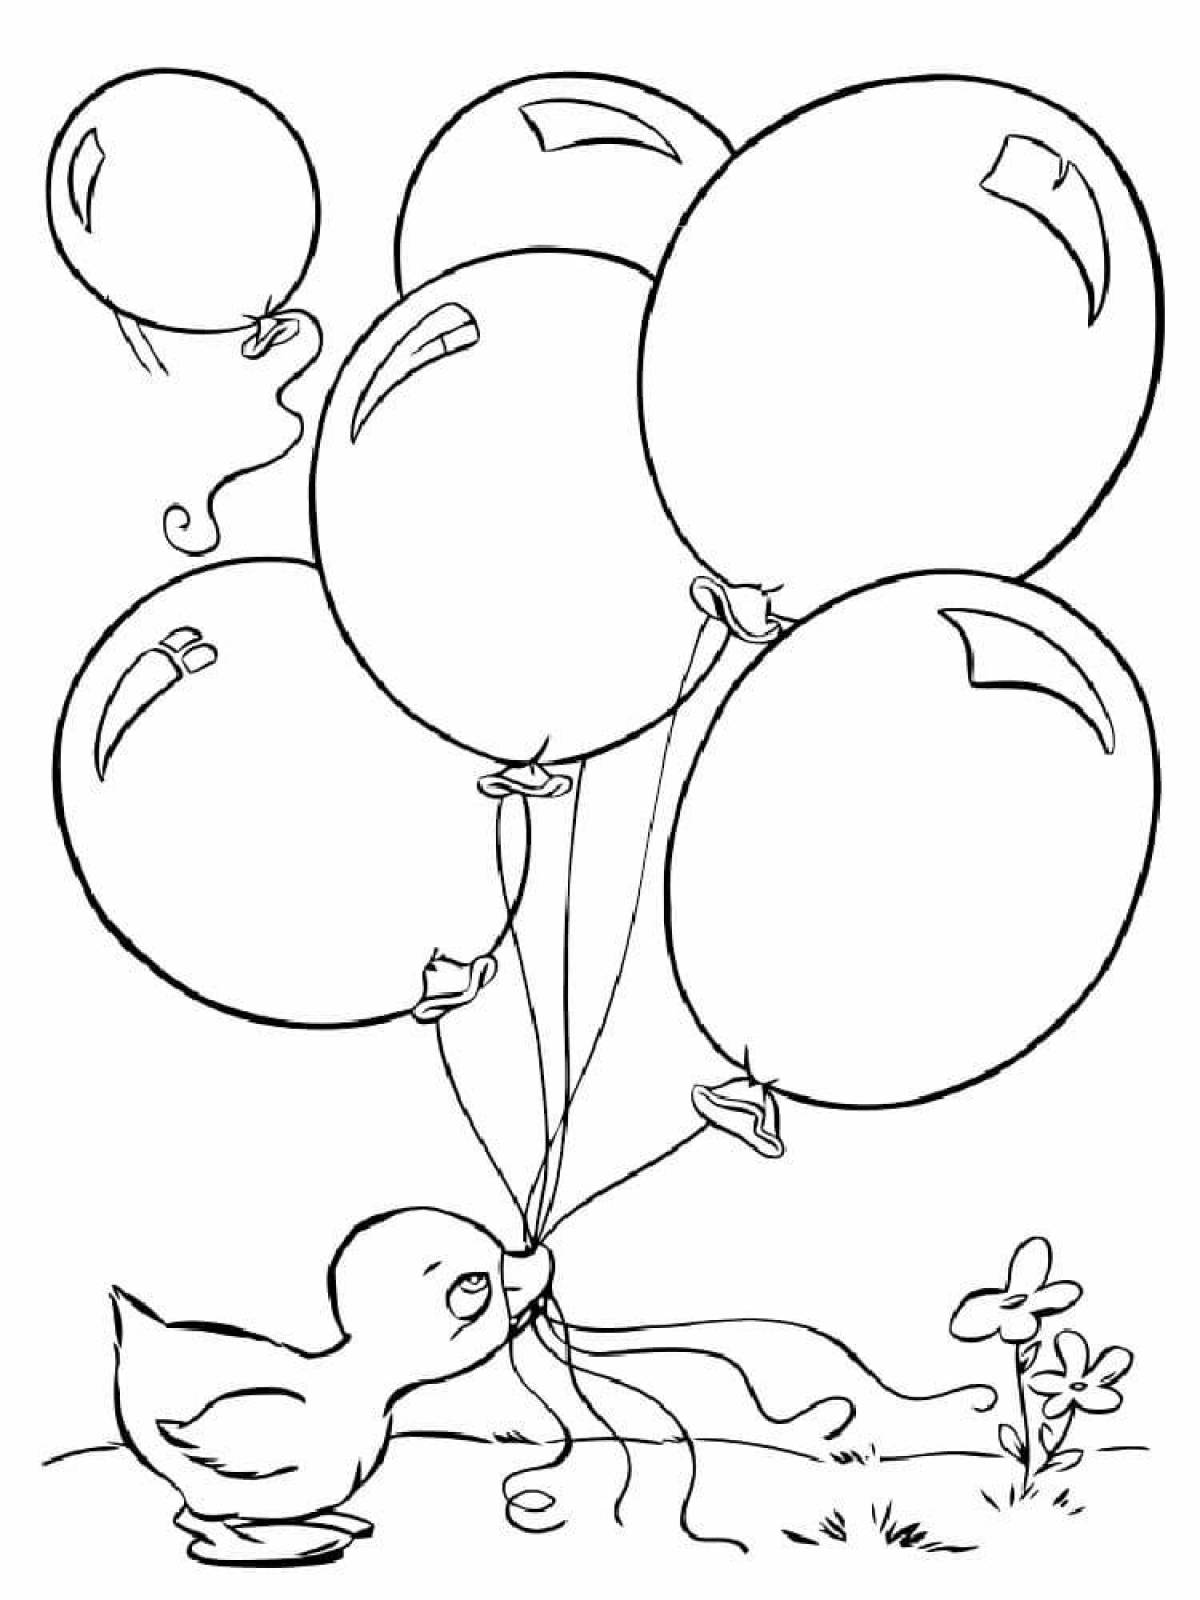 Balloons for children #3